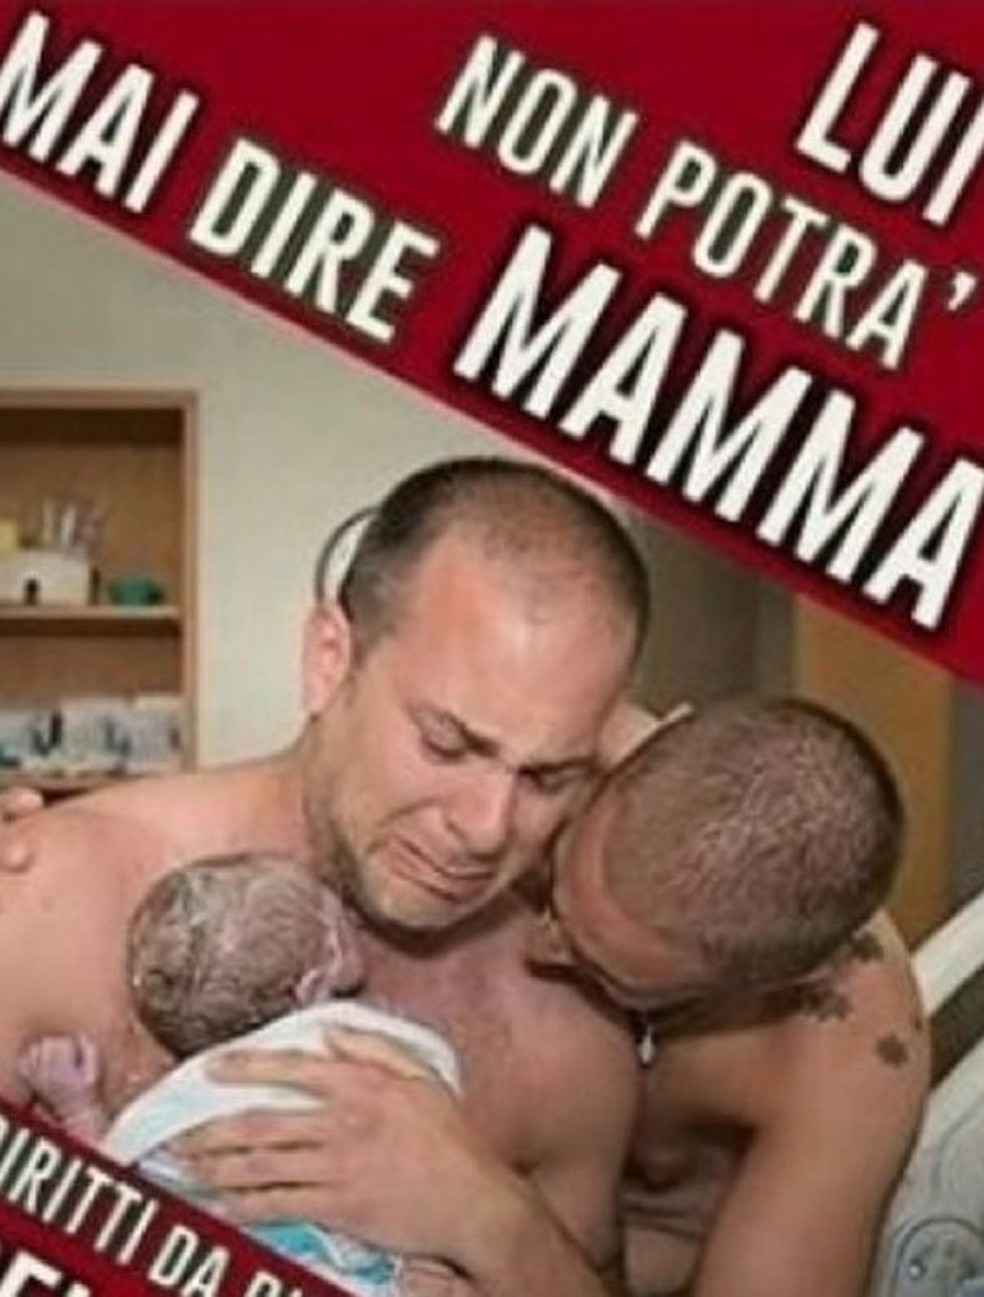 Partido de extrema direita italiano compartilhou a foto com mensagem contra adoção por casais do mesmo sexo (Foto: Reprodução) — Foto: Glamour